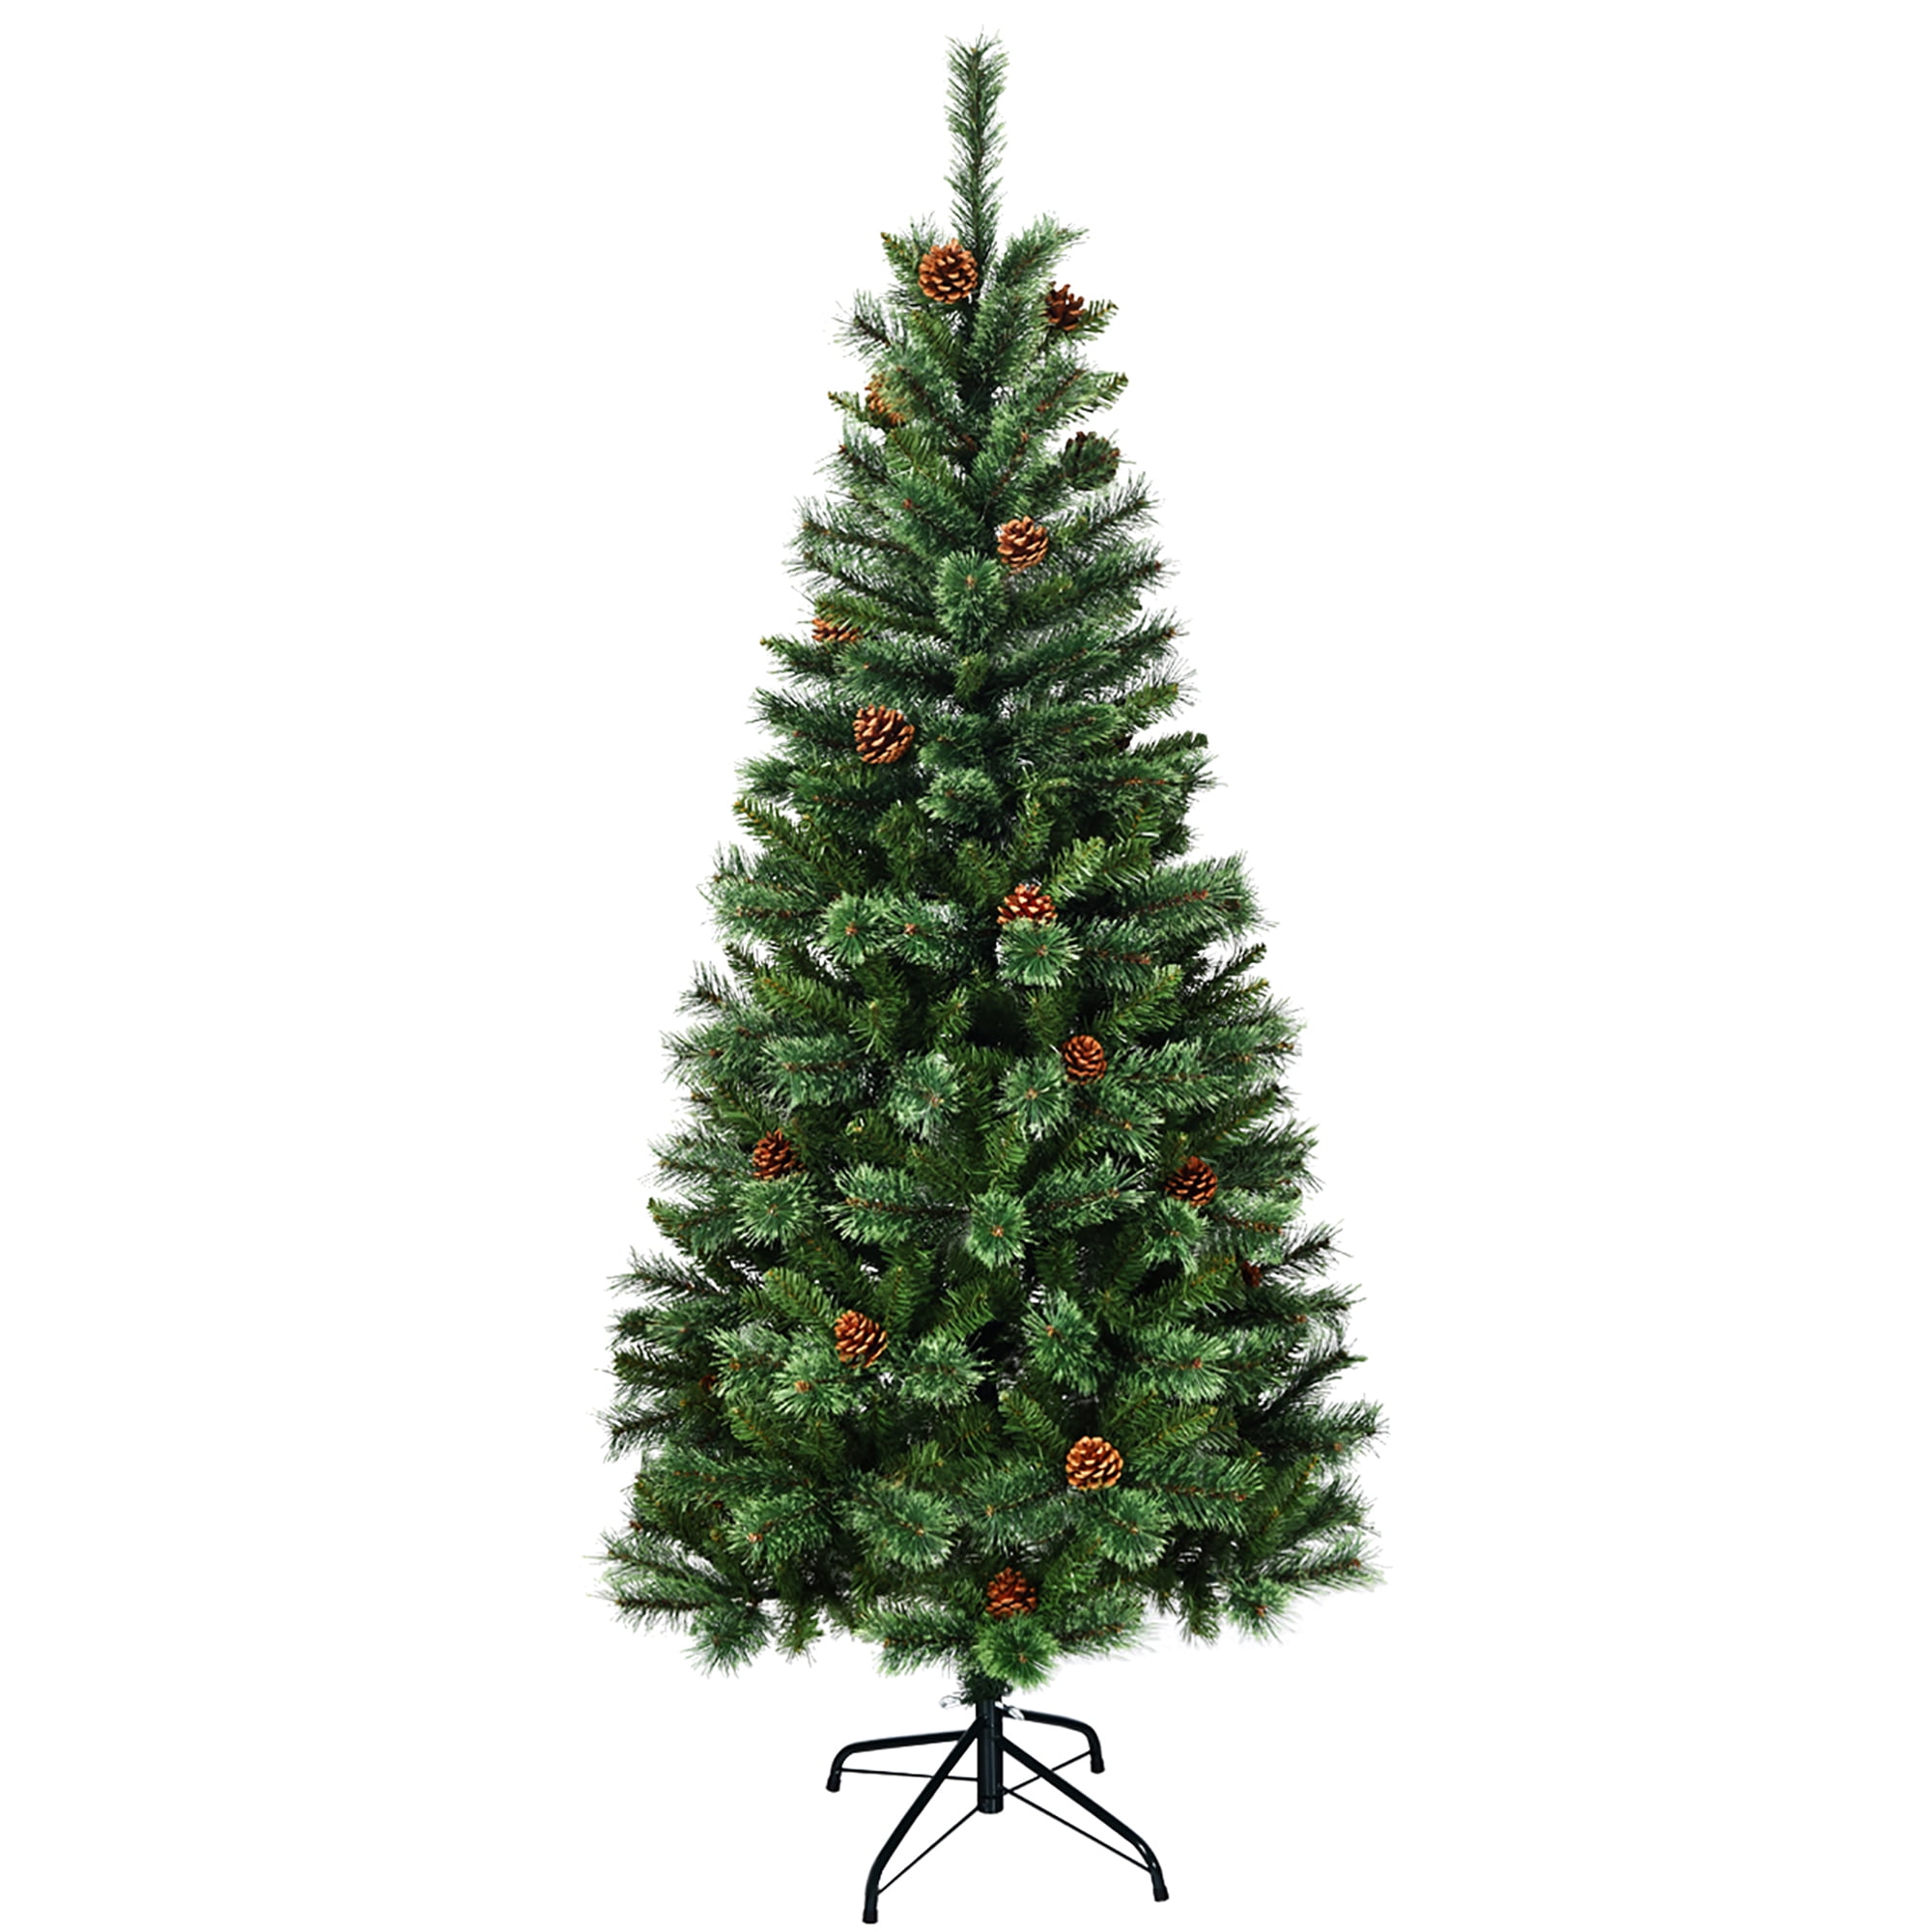 Santa Tall Glitter w/pine tree 